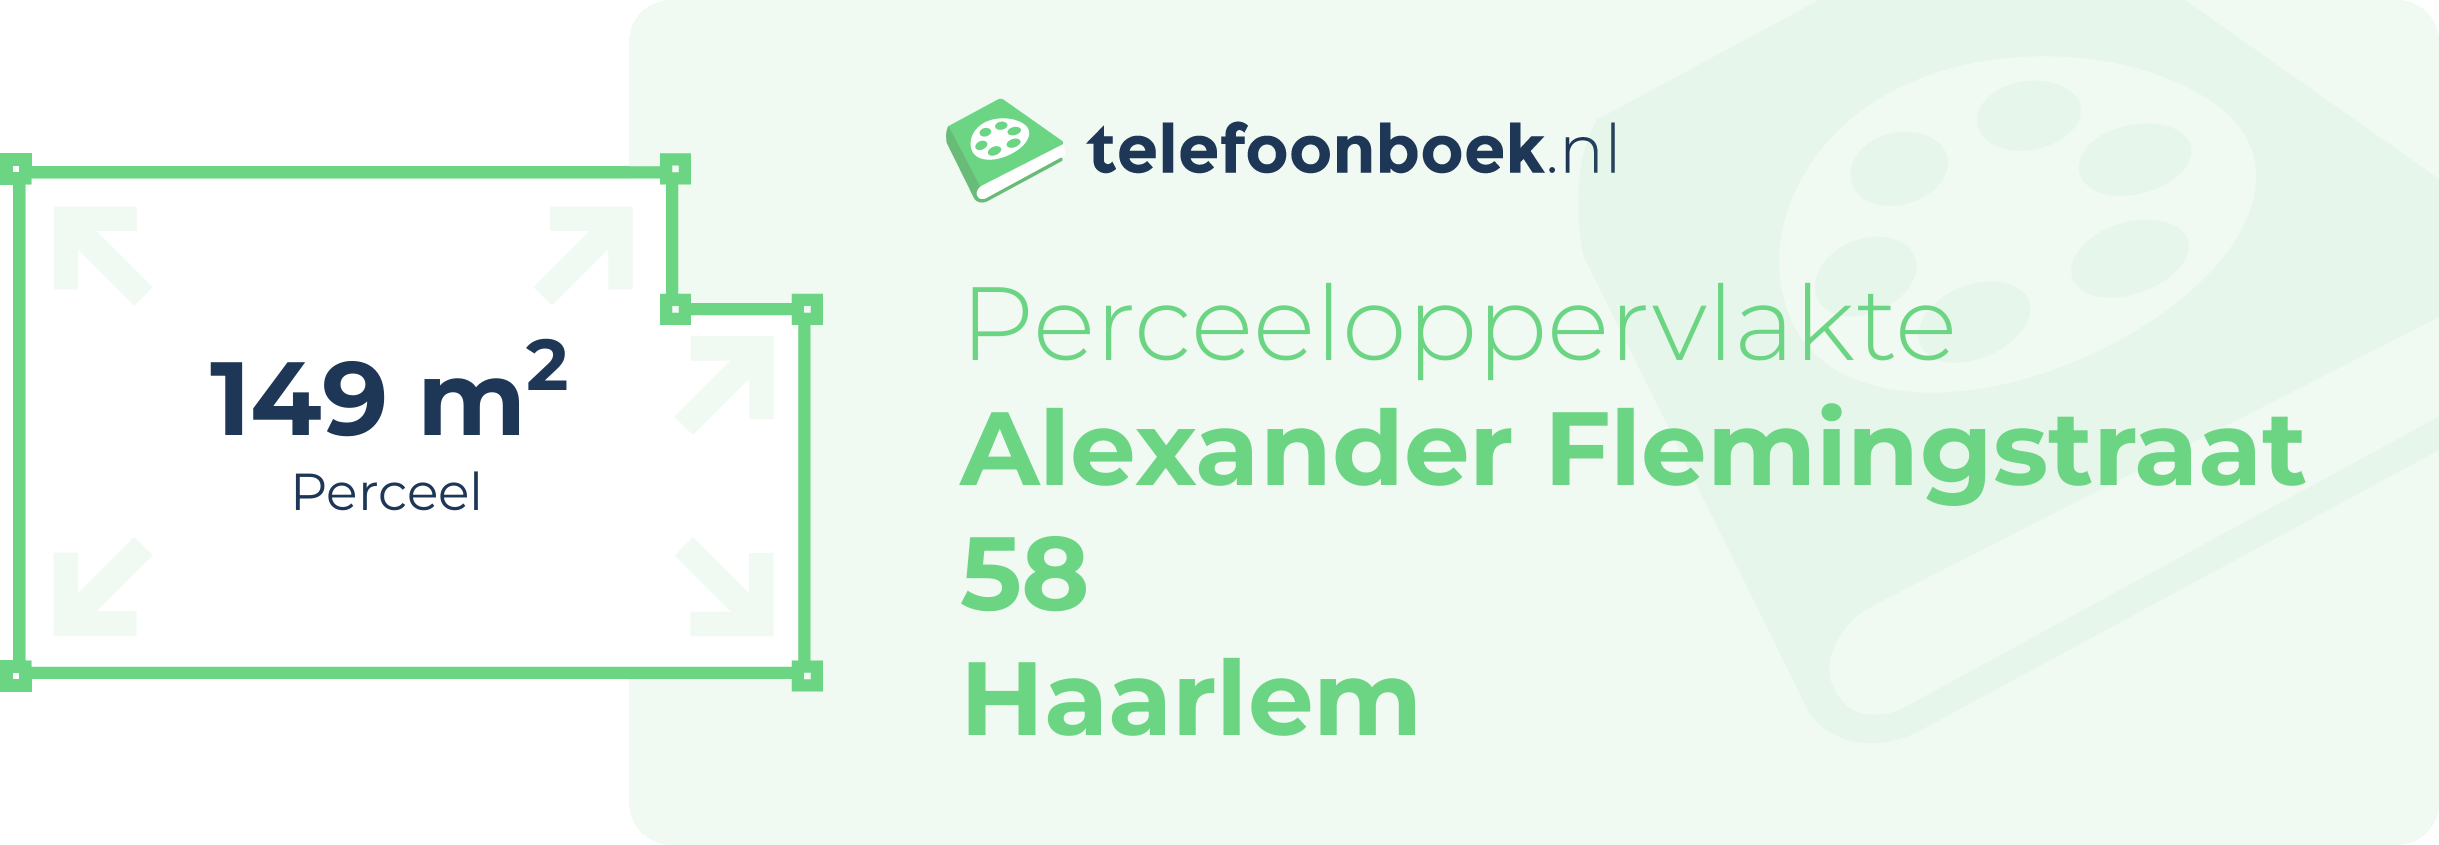 Perceeloppervlakte Alexander Flemingstraat 58 Haarlem